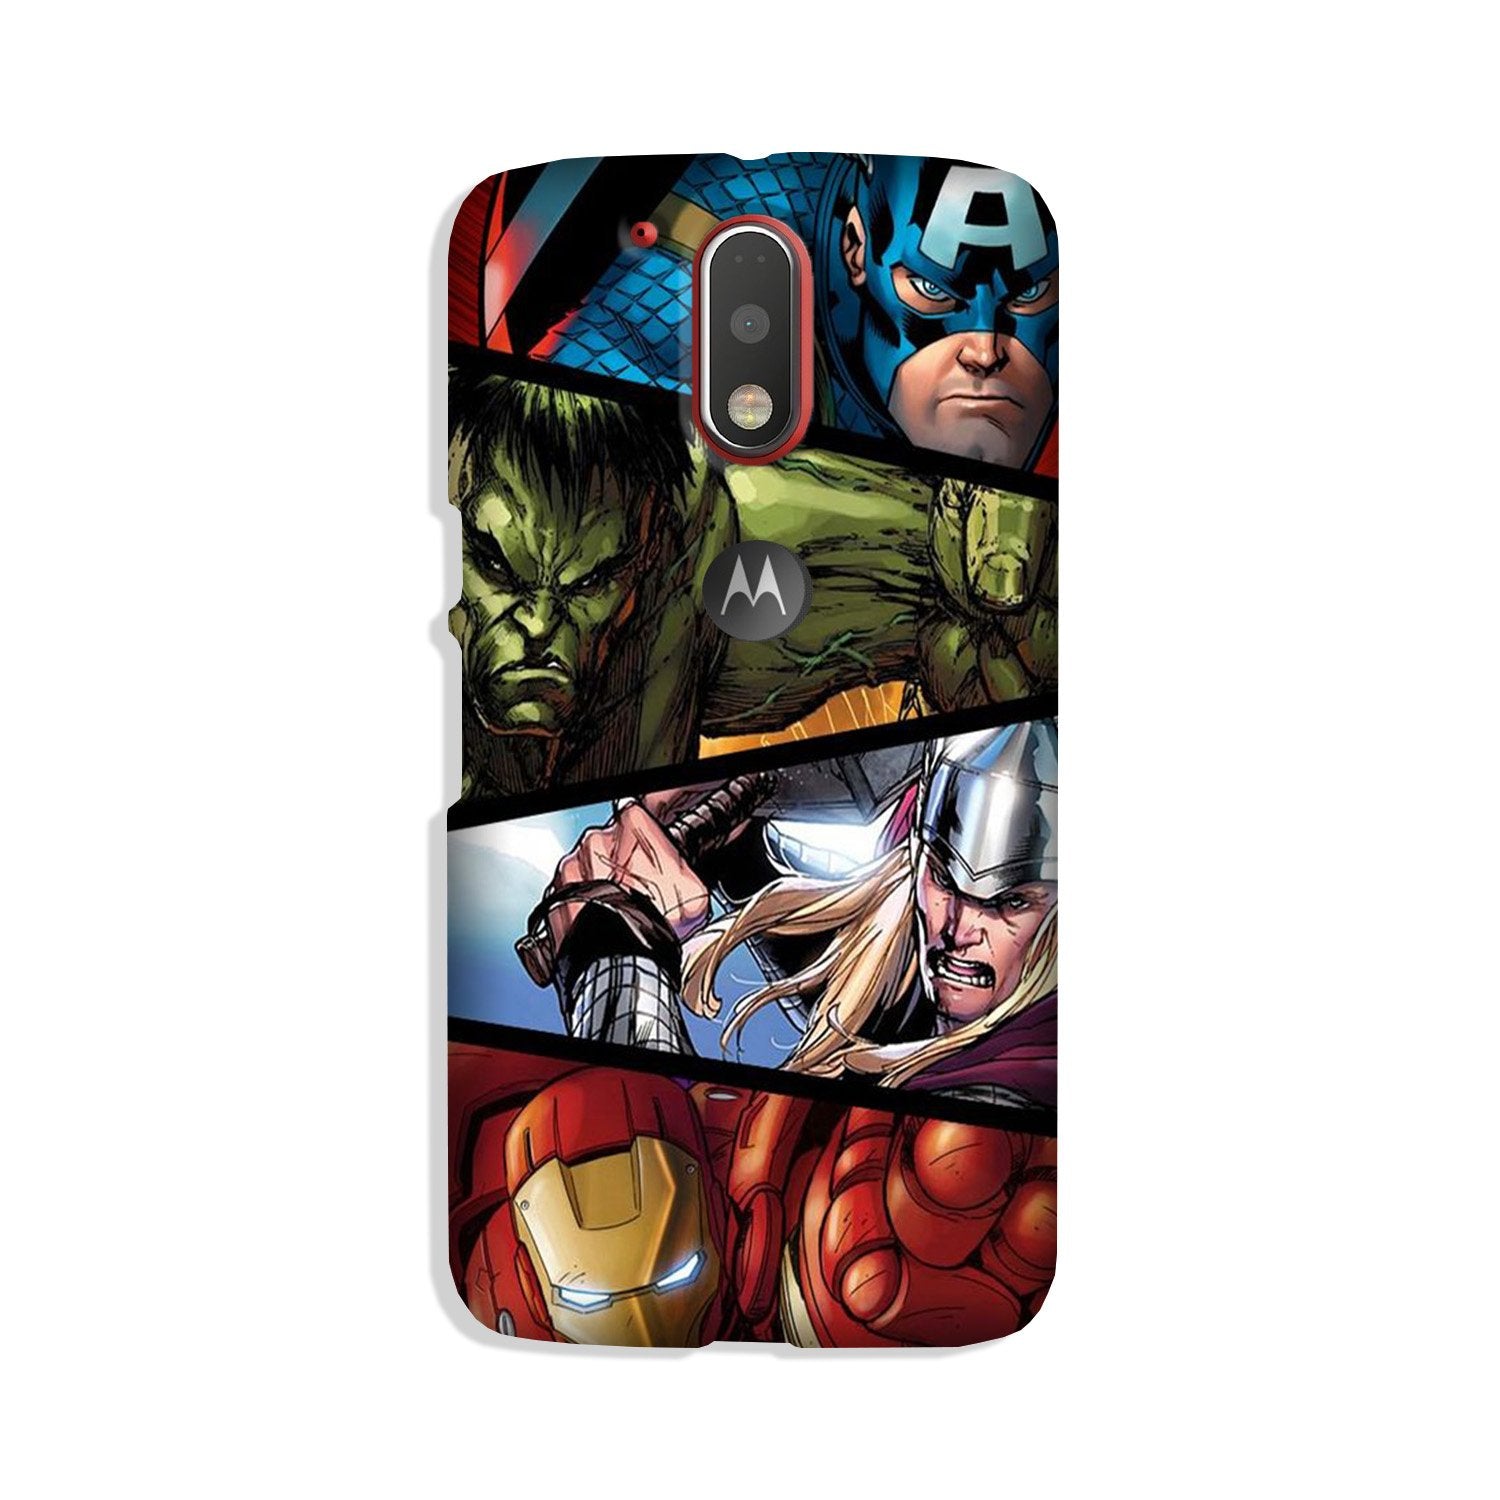 Avengers Superhero Case for Moto G4 Plus(Design - 124)